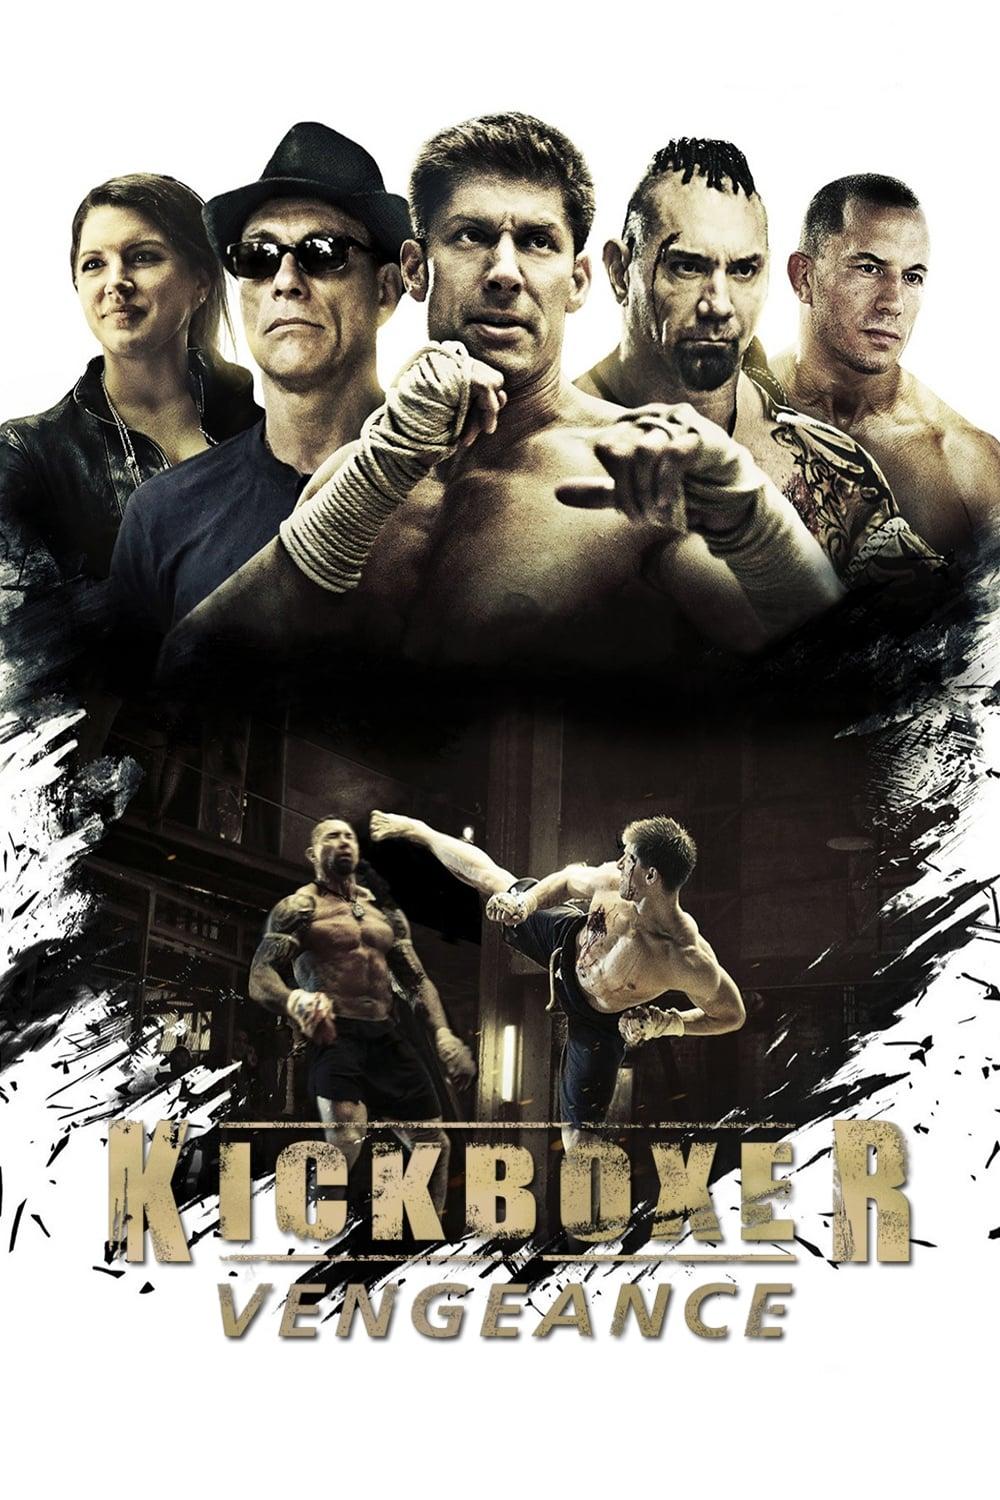 Kickboxer: Vengeance poster